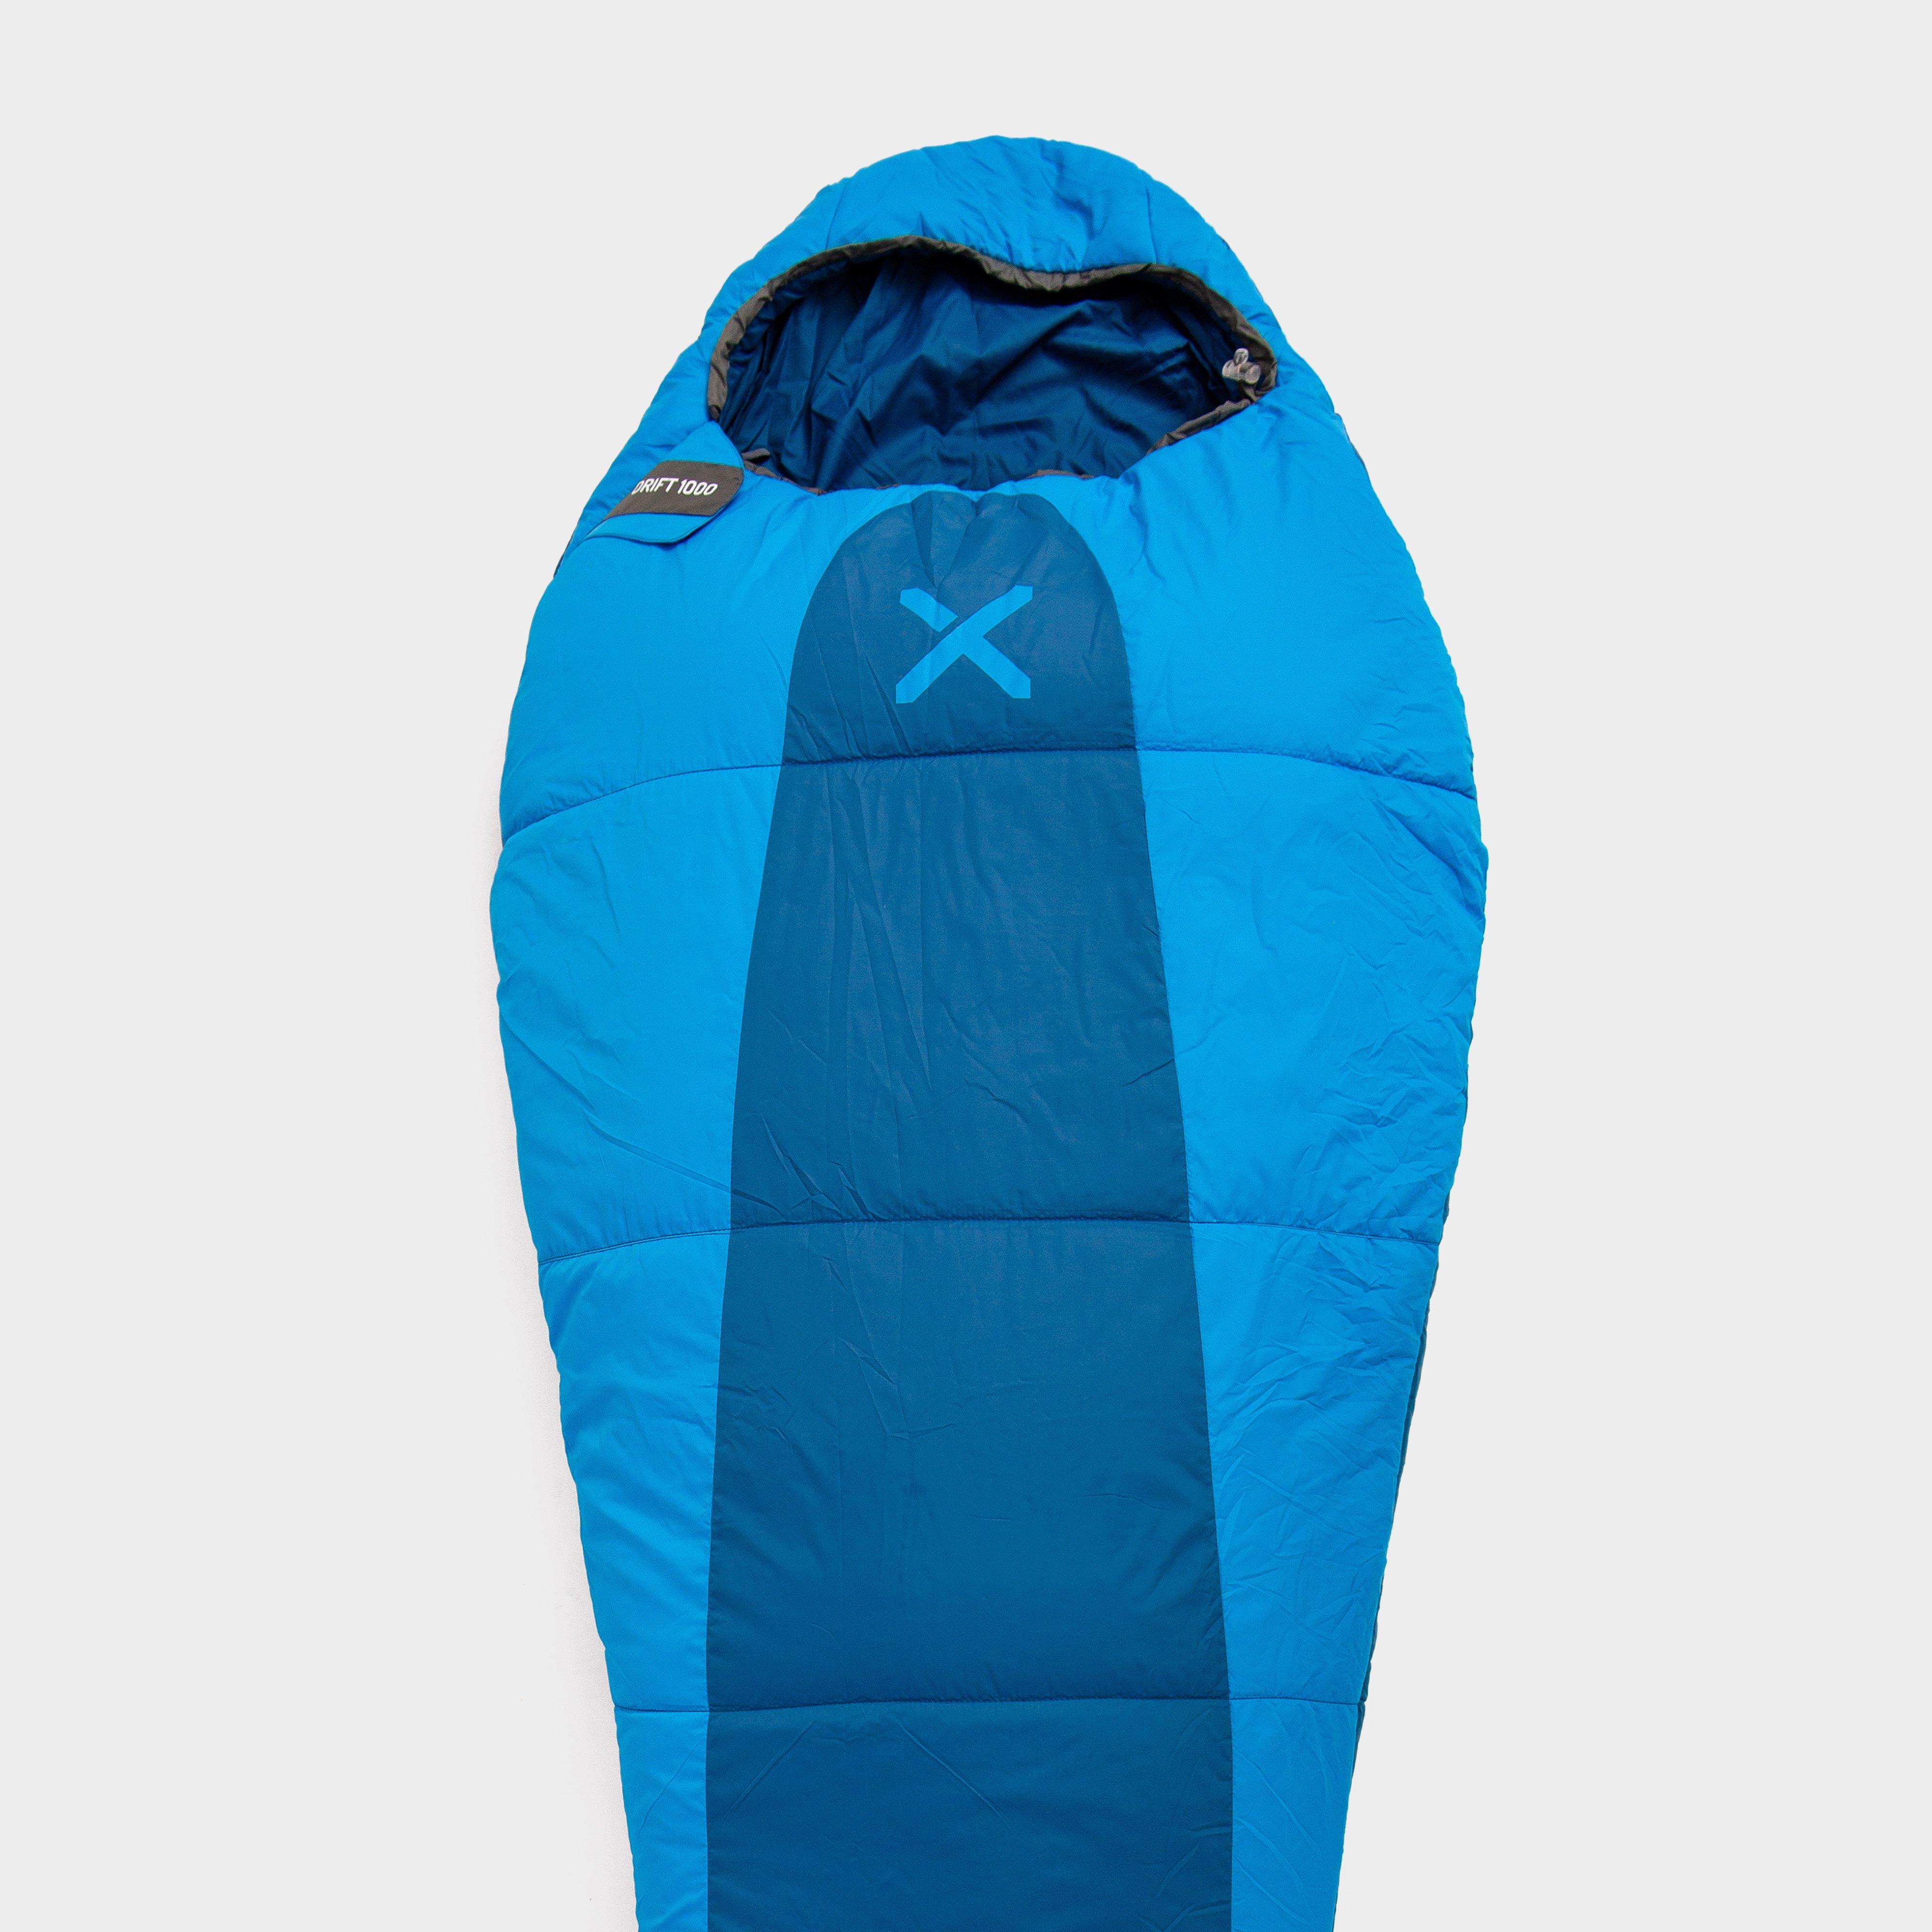  OEX Drift 1000 Sleeping Bag, Blue